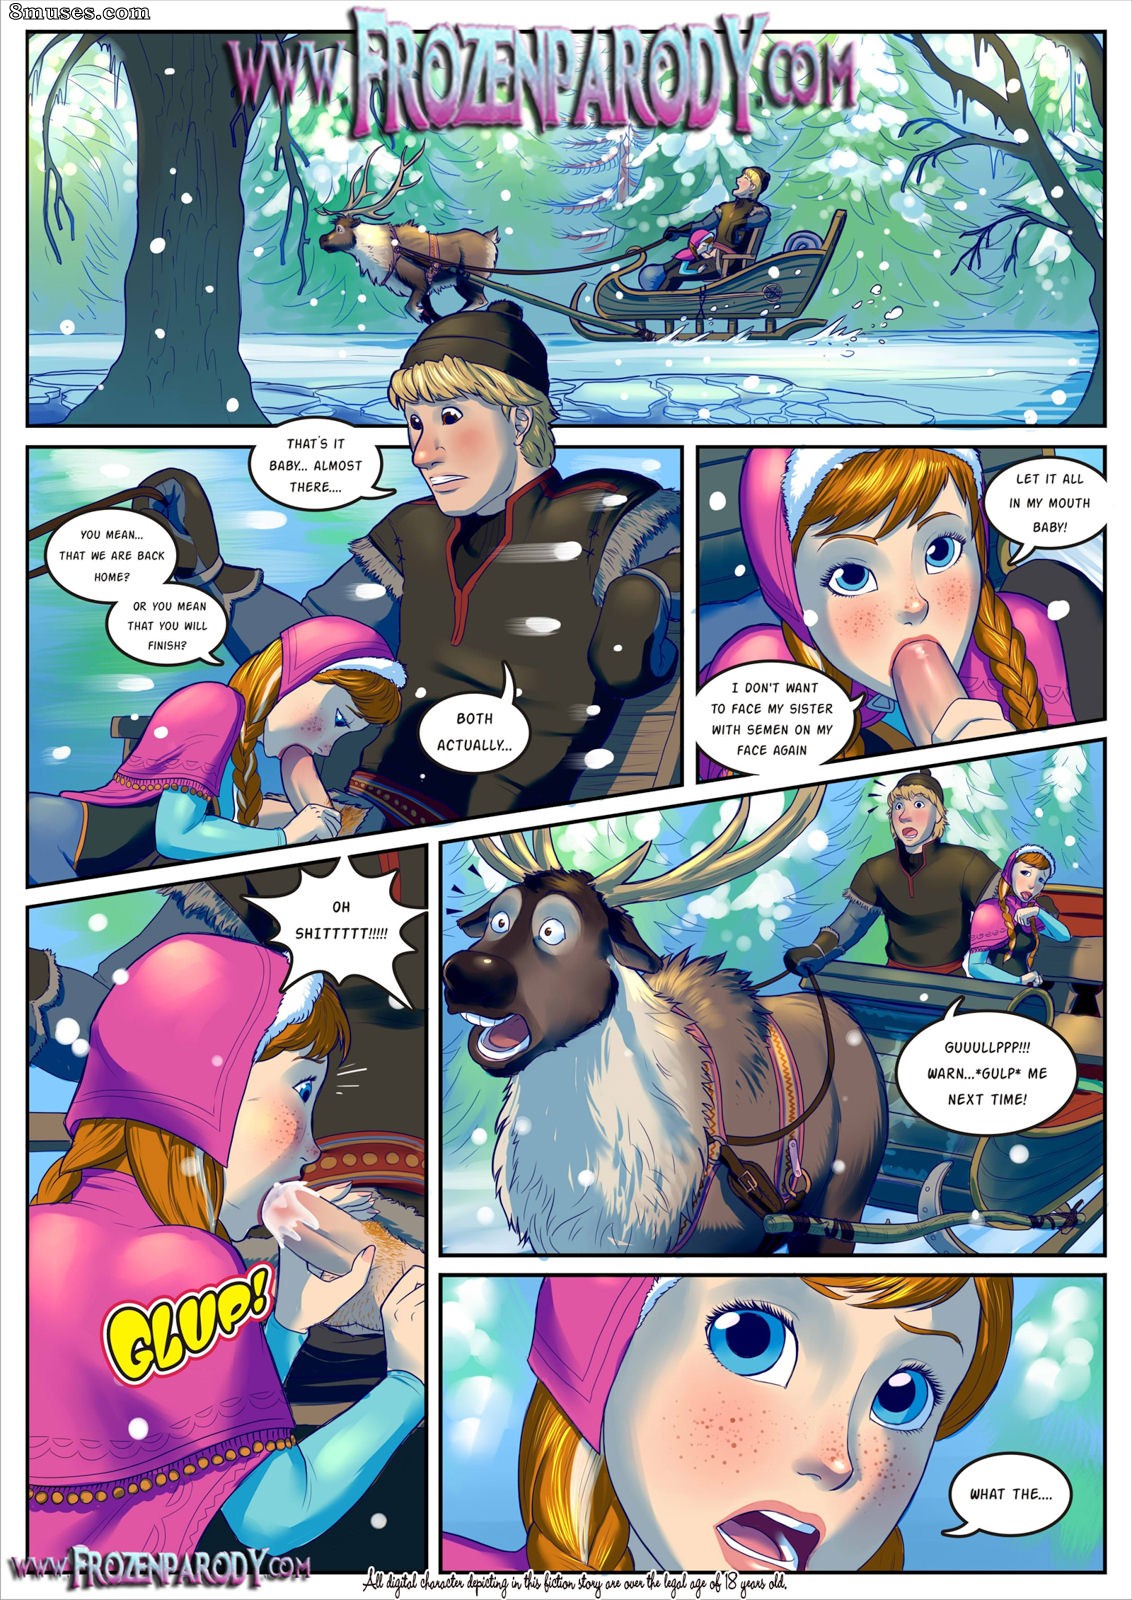 1132px x 1600px - Frozen Parody 1 - Elsa Sex Issue 1 - 8muses Comics - Sex Comics and Porn  Cartoons